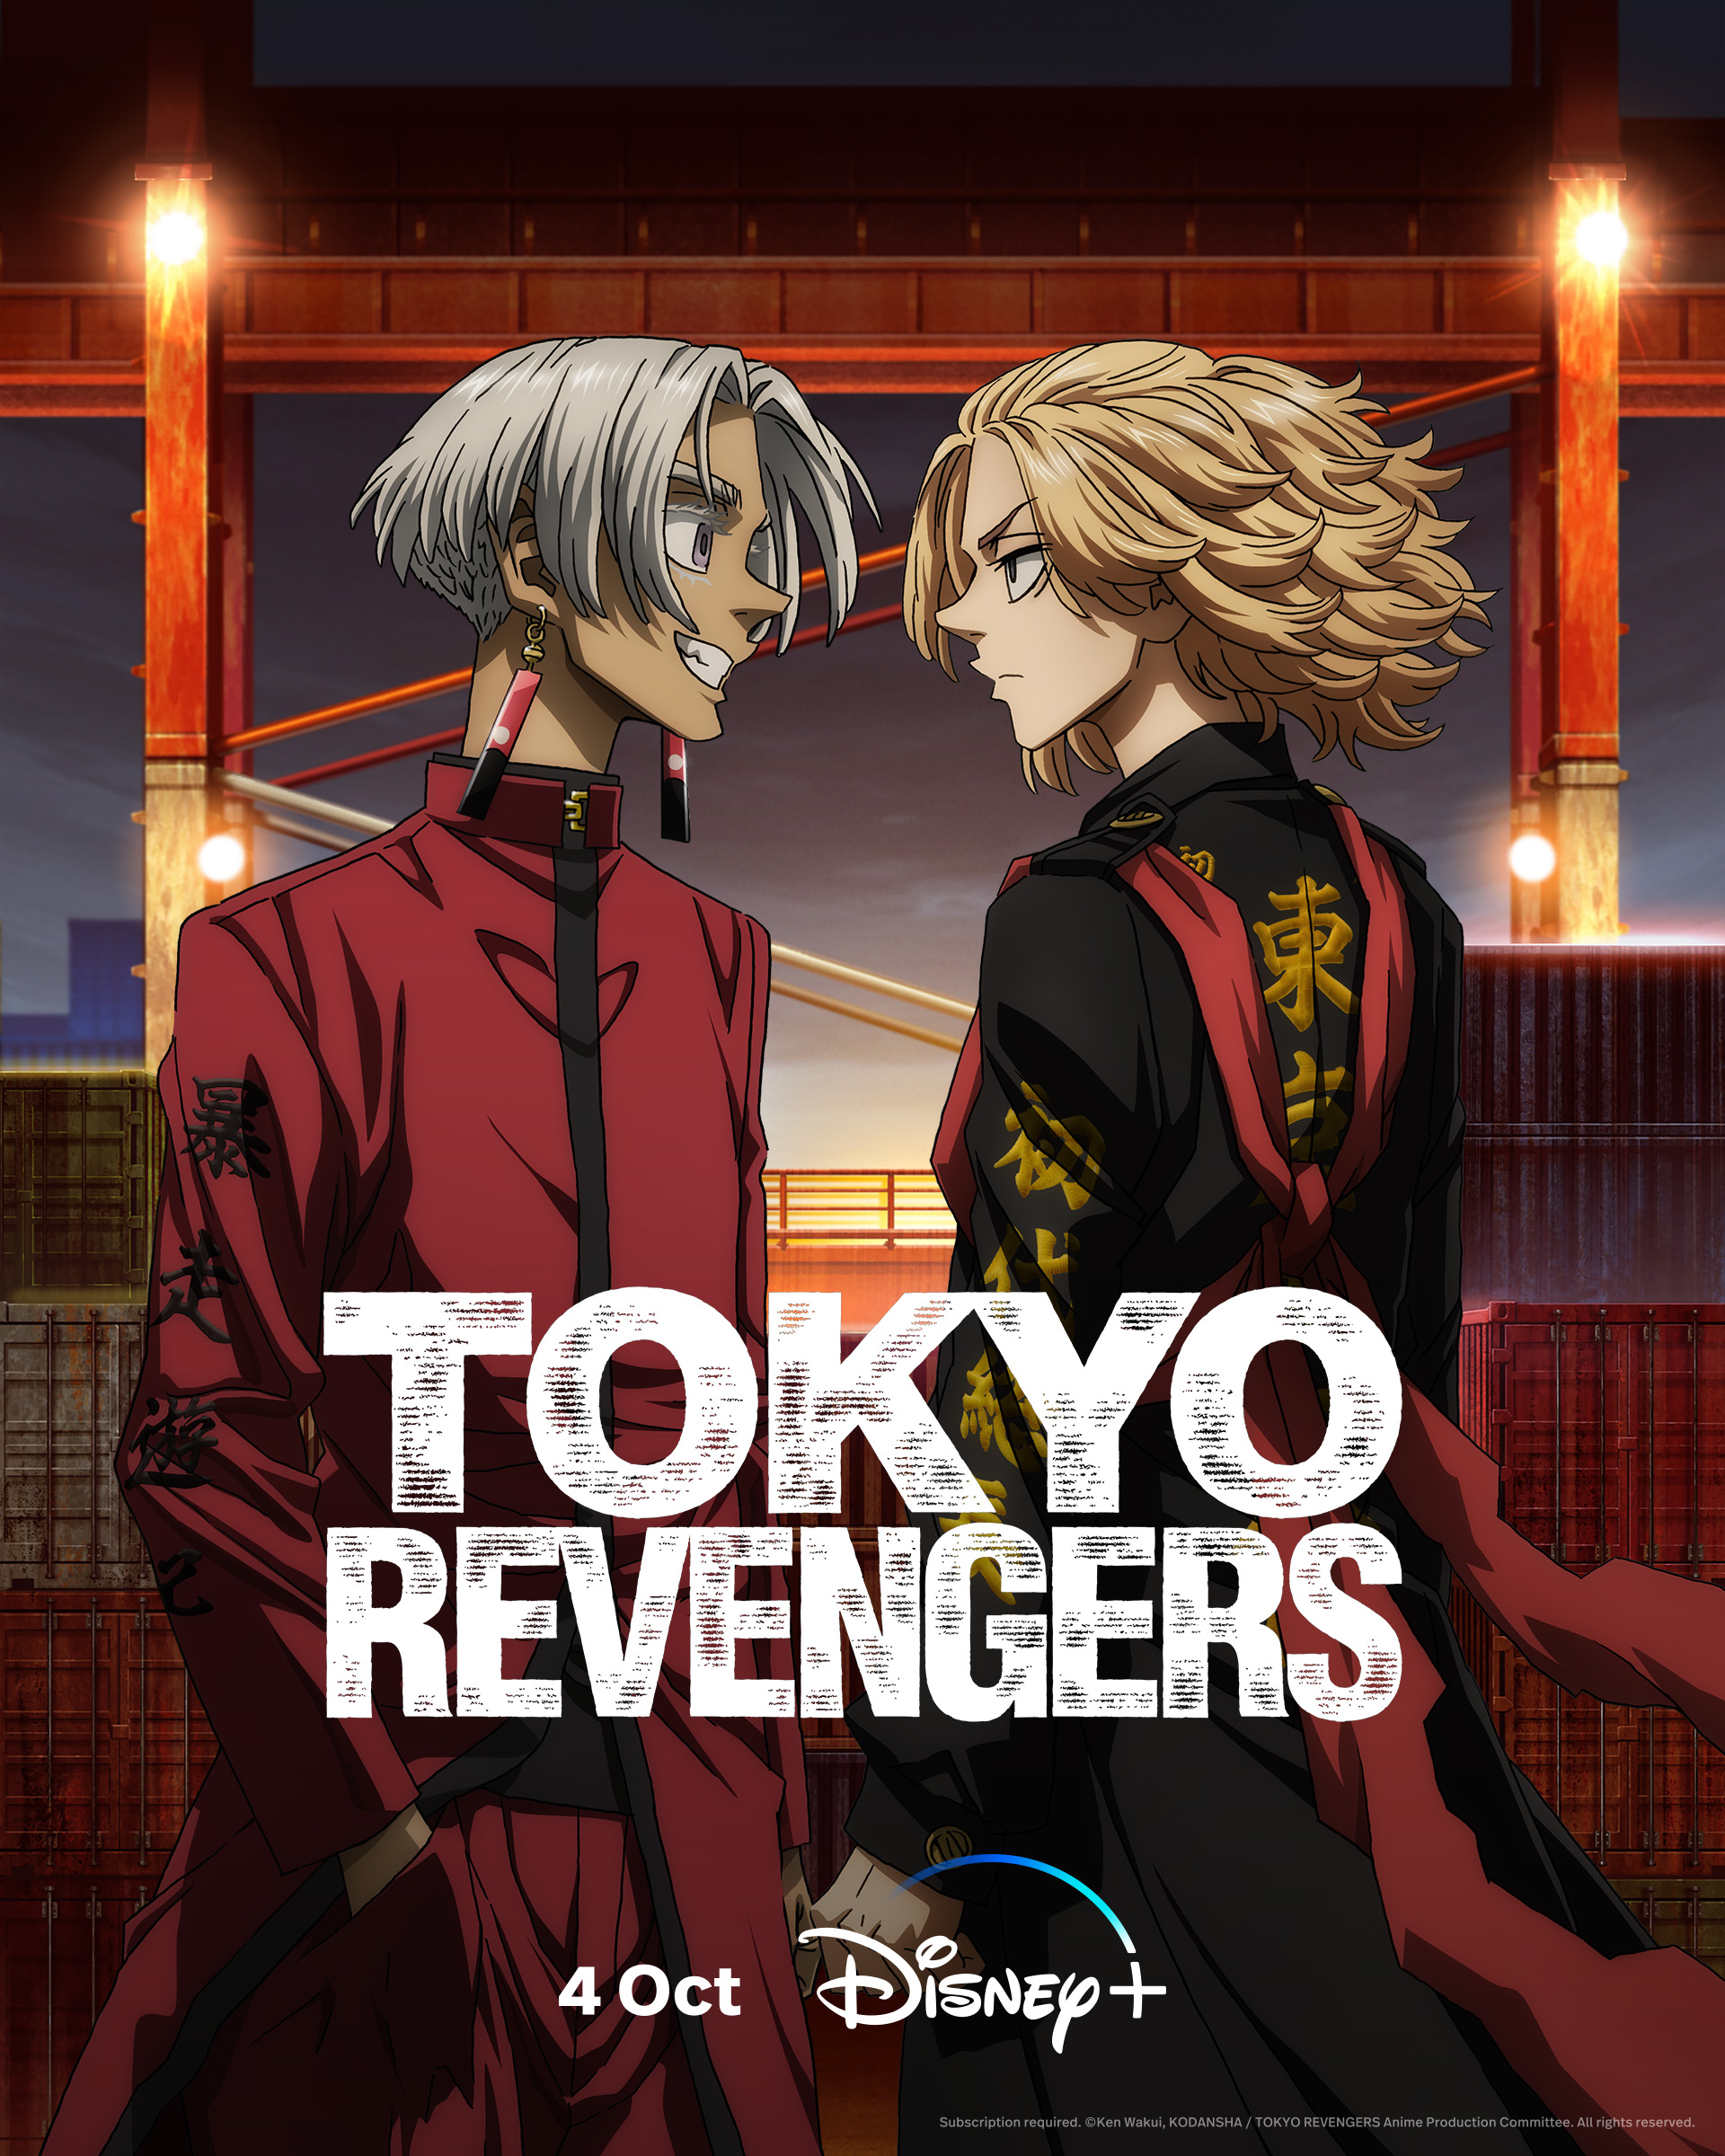 Tokyo Revengers lança novo episódio do arco Tenjiku no Star+